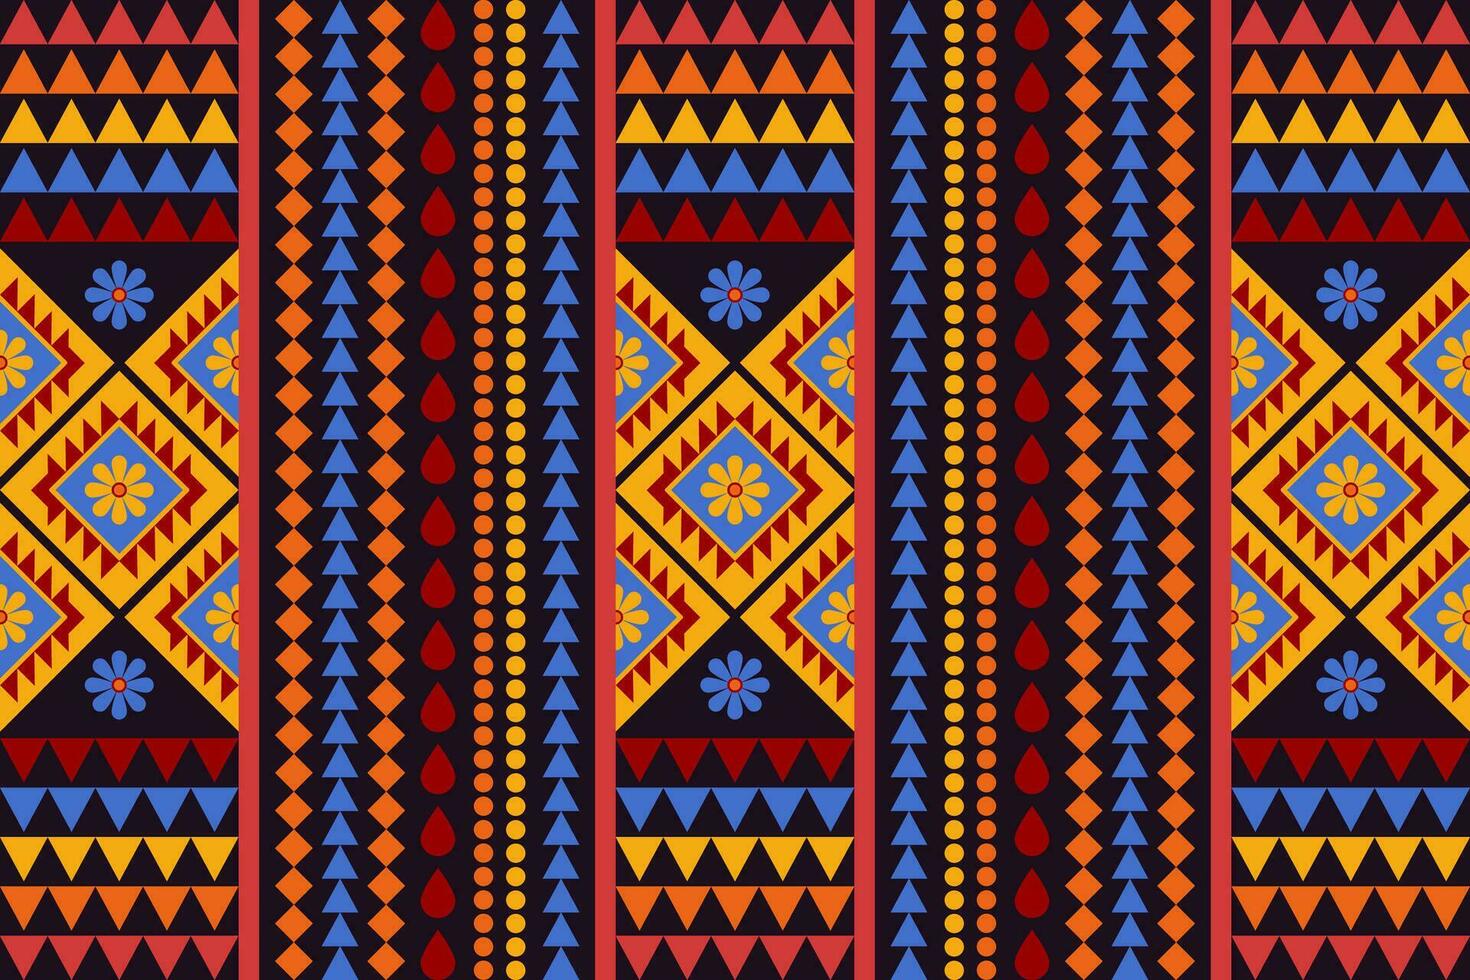 geometrisch ethnisch Muster traditionell Design zum Hintergrund, Teppich, Hintergrund, Kleidung, Verpackung, Batik, Stoff, Vektor Illustration Stickerei Stil. Stammes- Muster